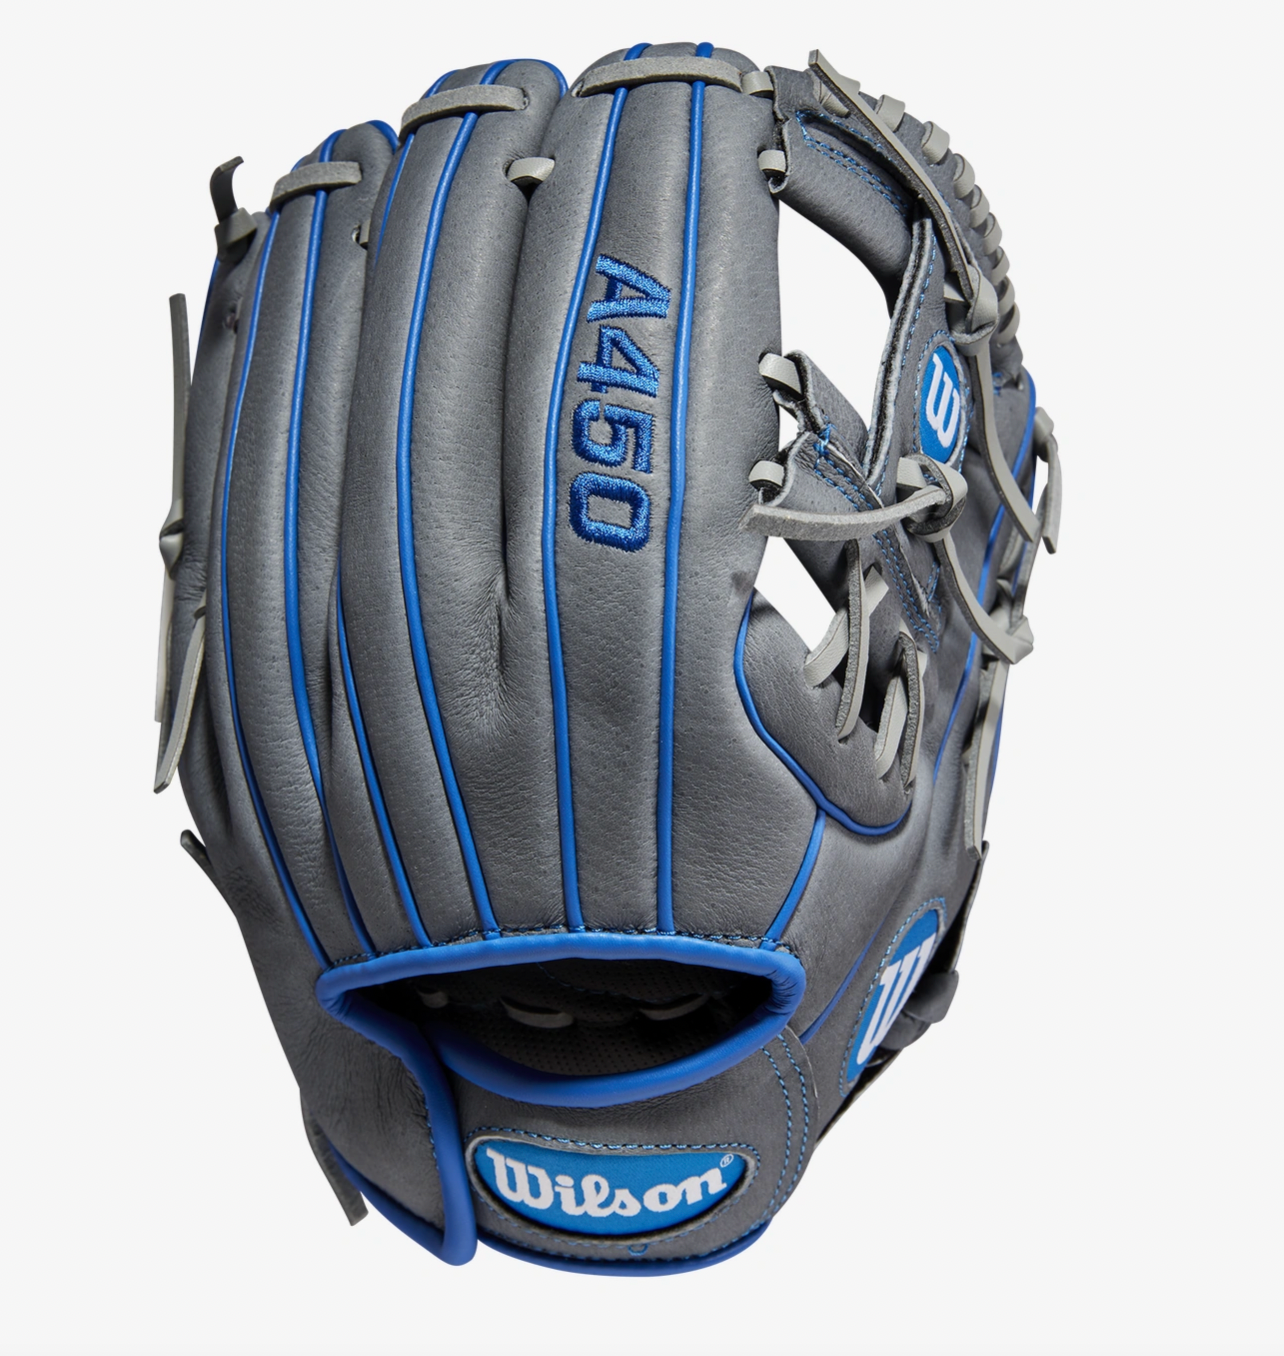 Wilson 2022 A450 Infield Baseball Glove